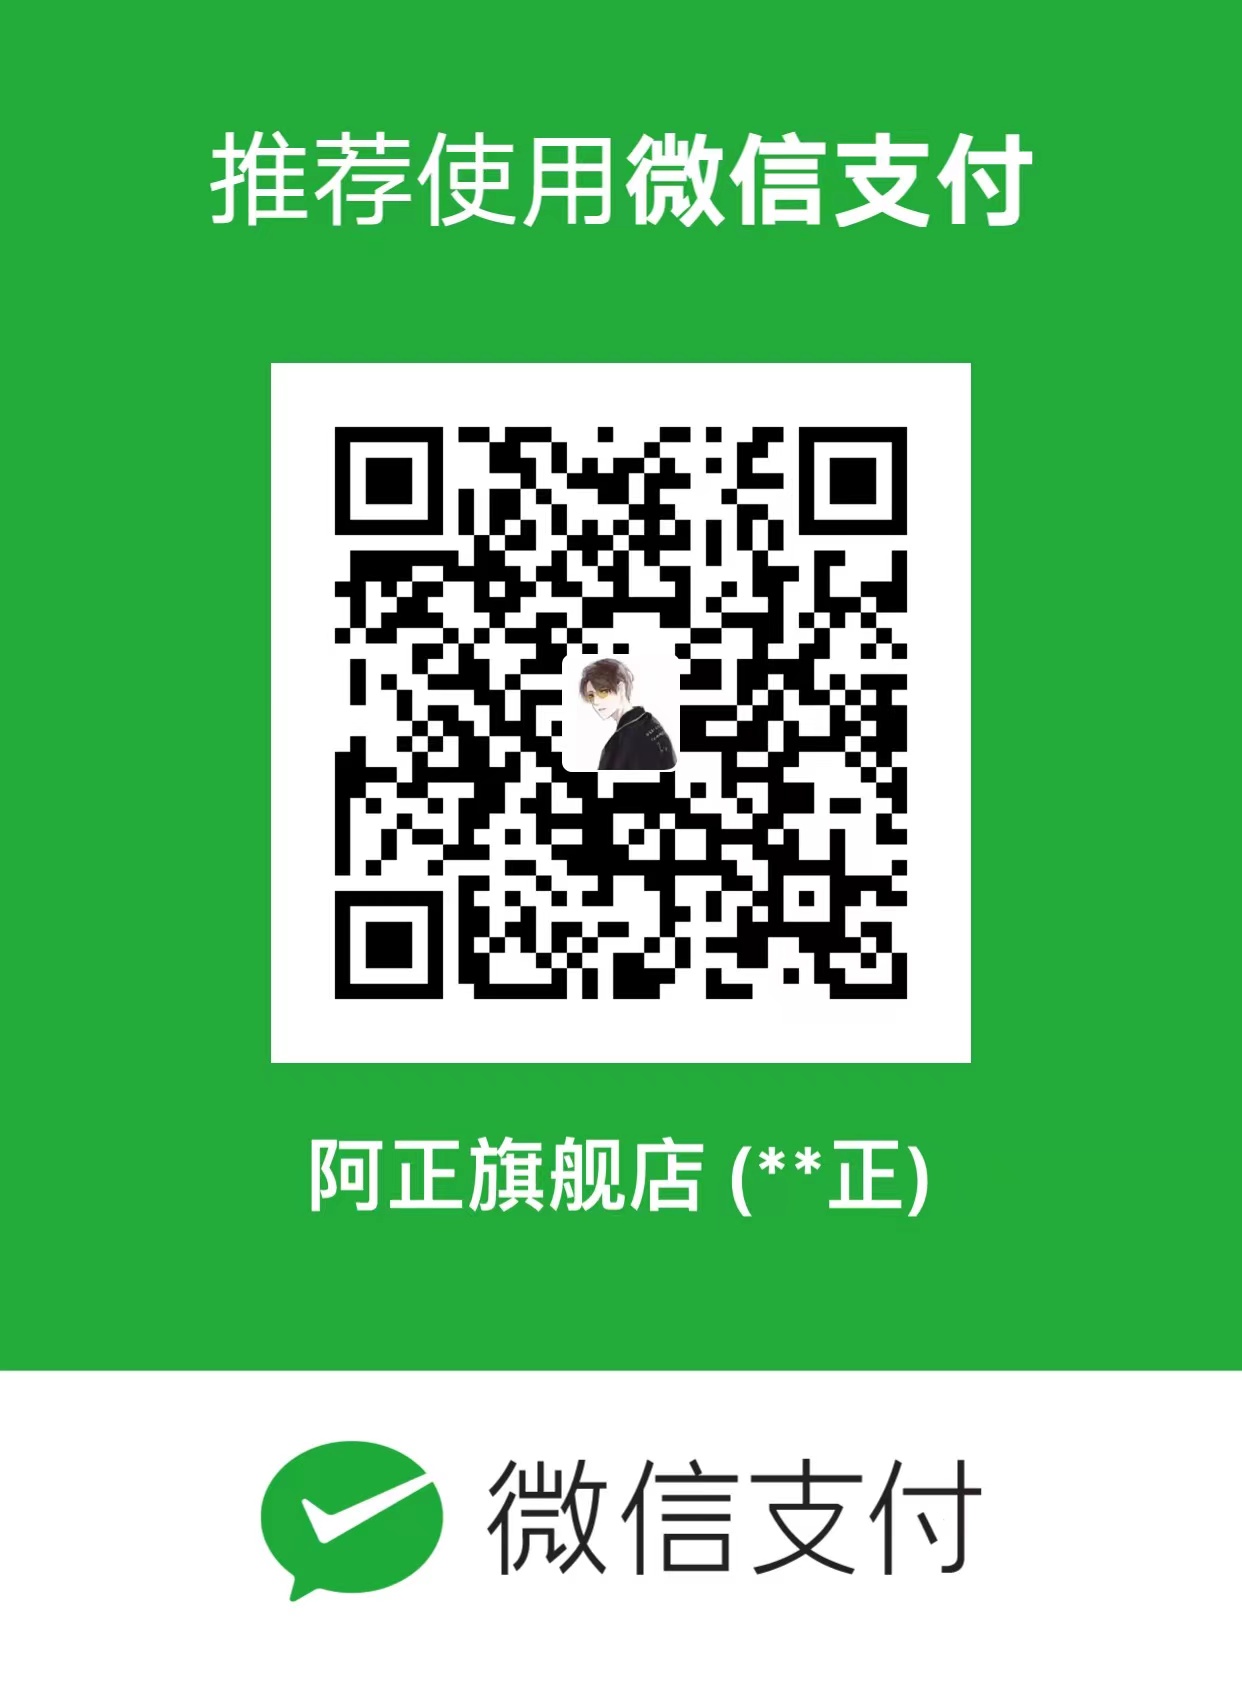 腾讯QQ推小额网络捐赠公益平台 3